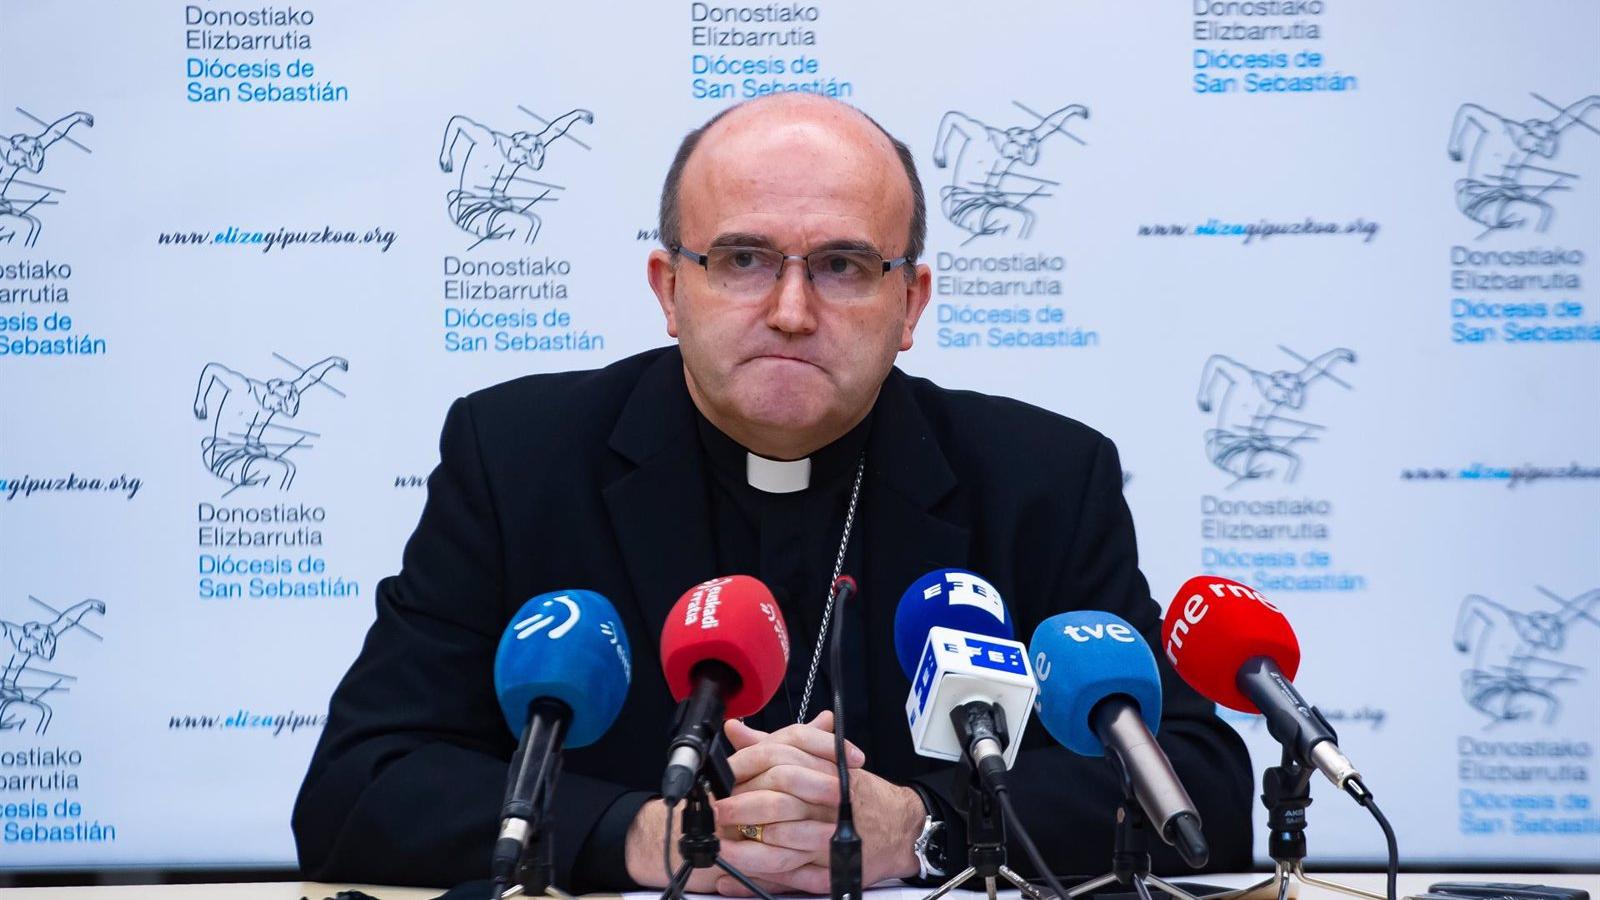 Obispos se hacen eco de las palabras del nuncio: "18 meses de prisión por matar una rata mientras se facilita el aborto"